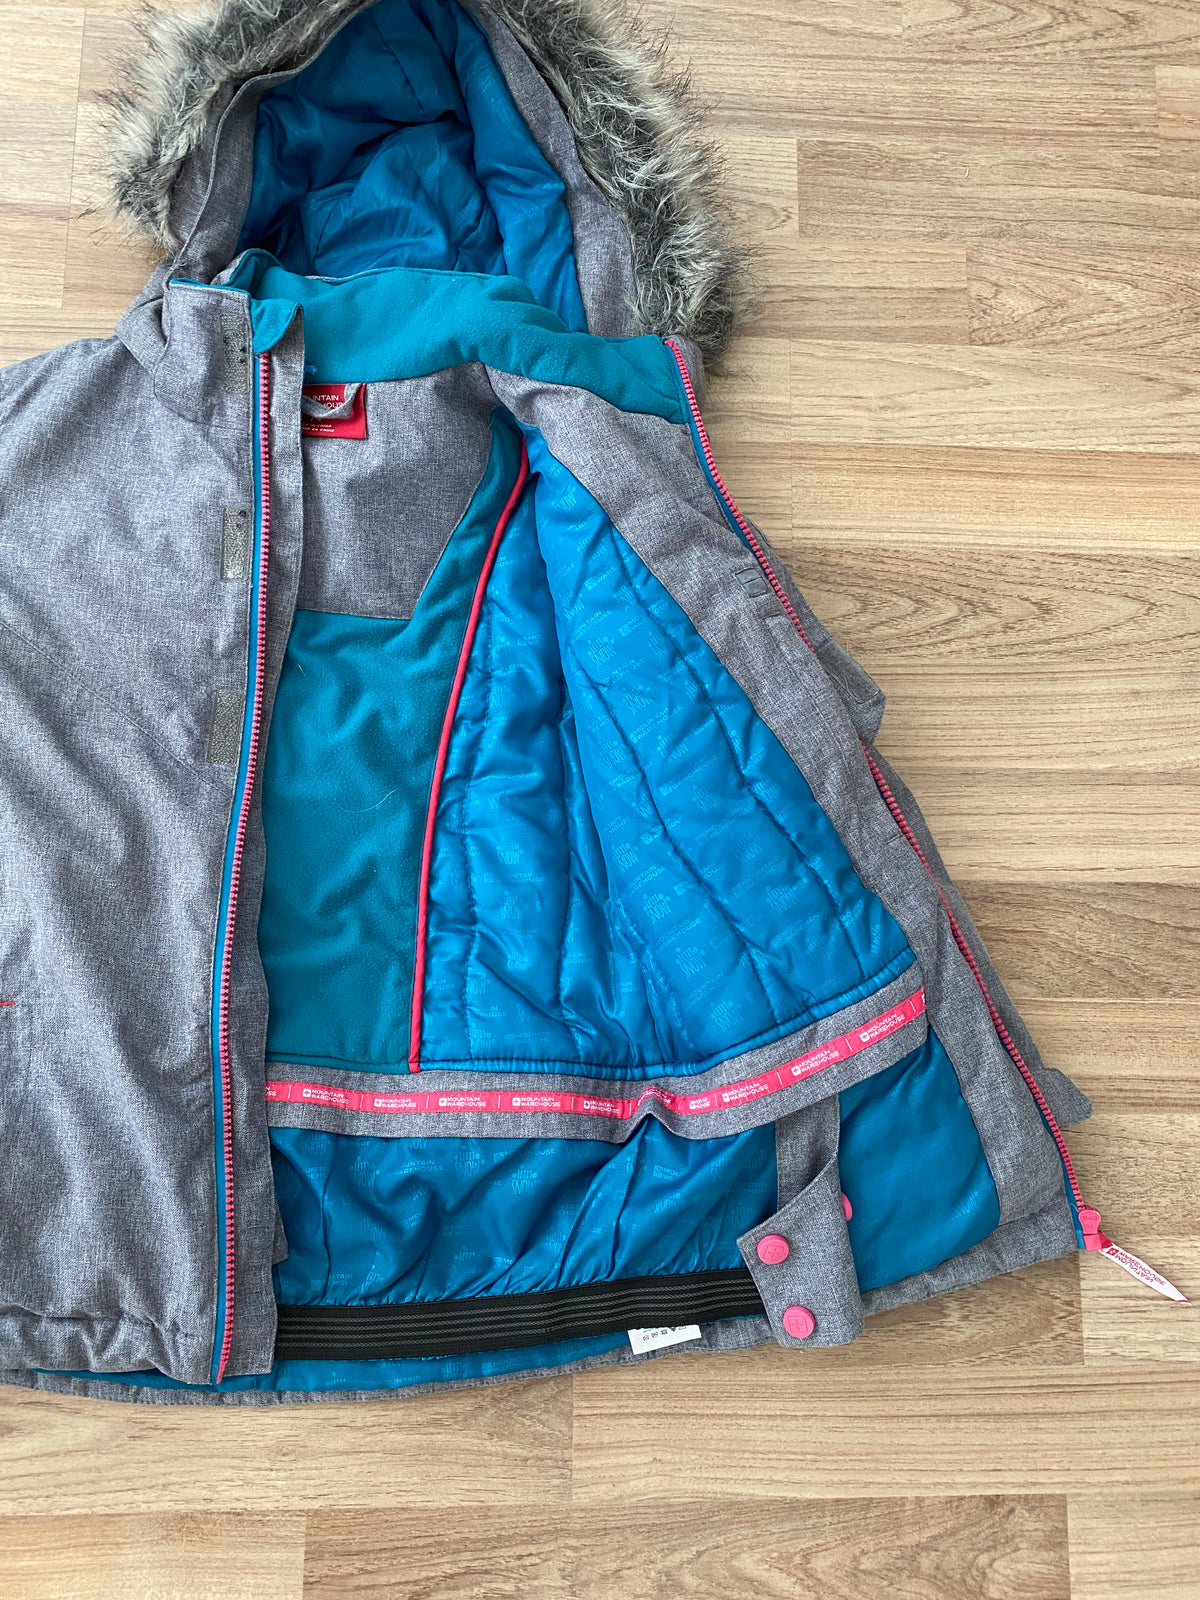 Full Zip Hooded Winter Coat (Girls Size 7-8)